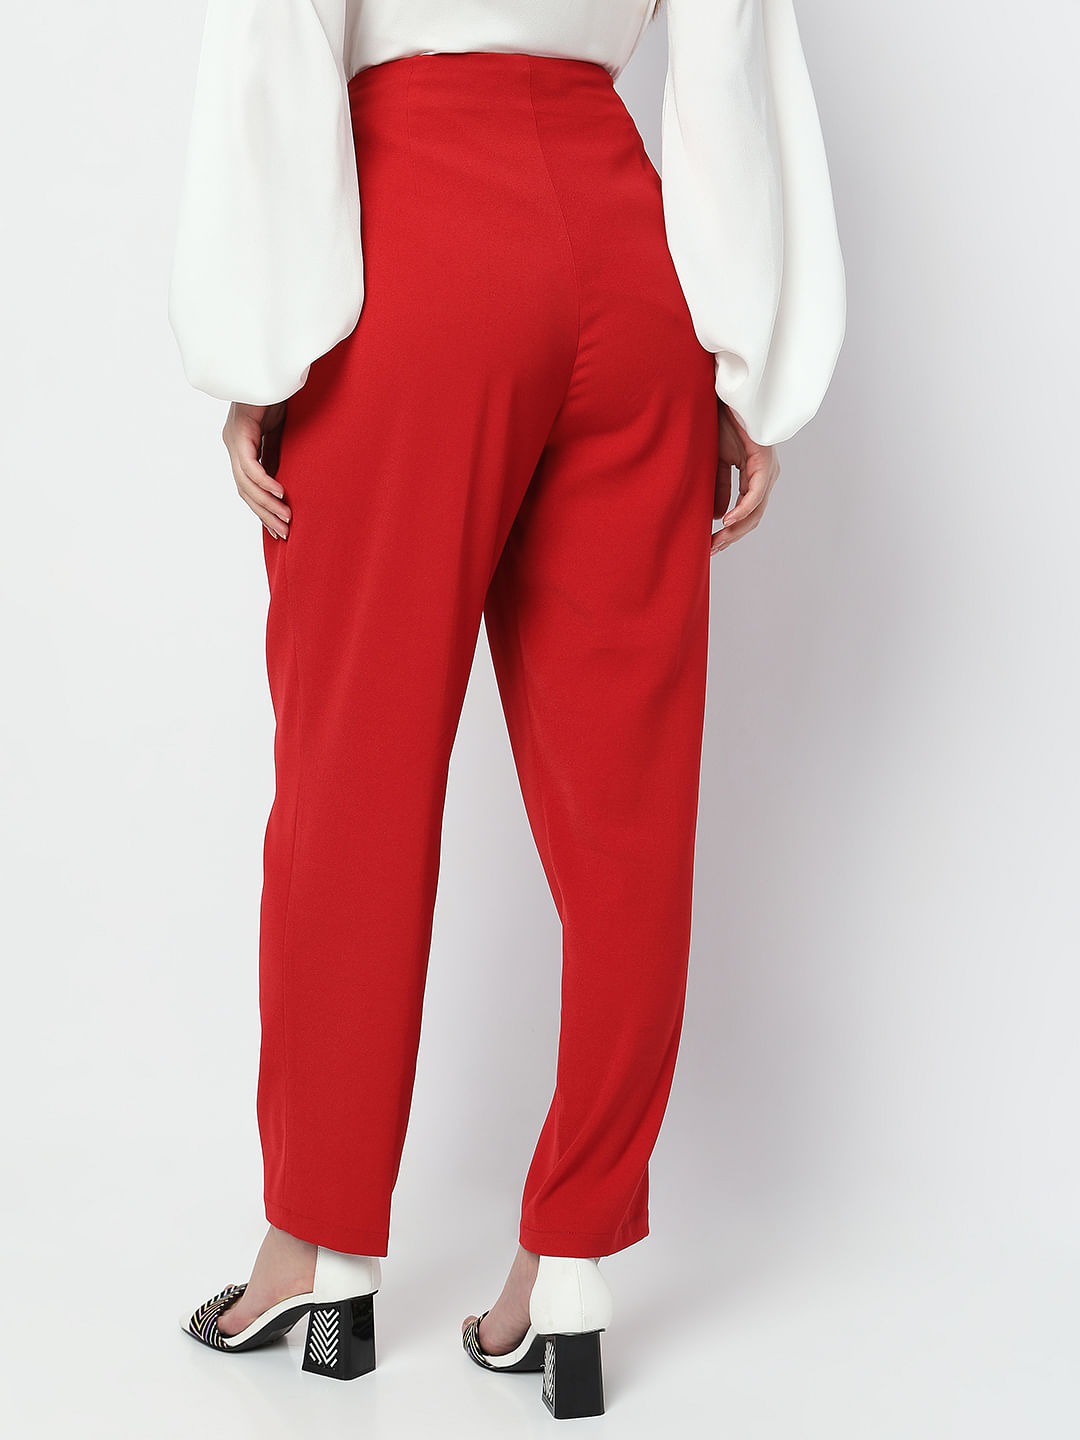 Women's Red Pants | Loft